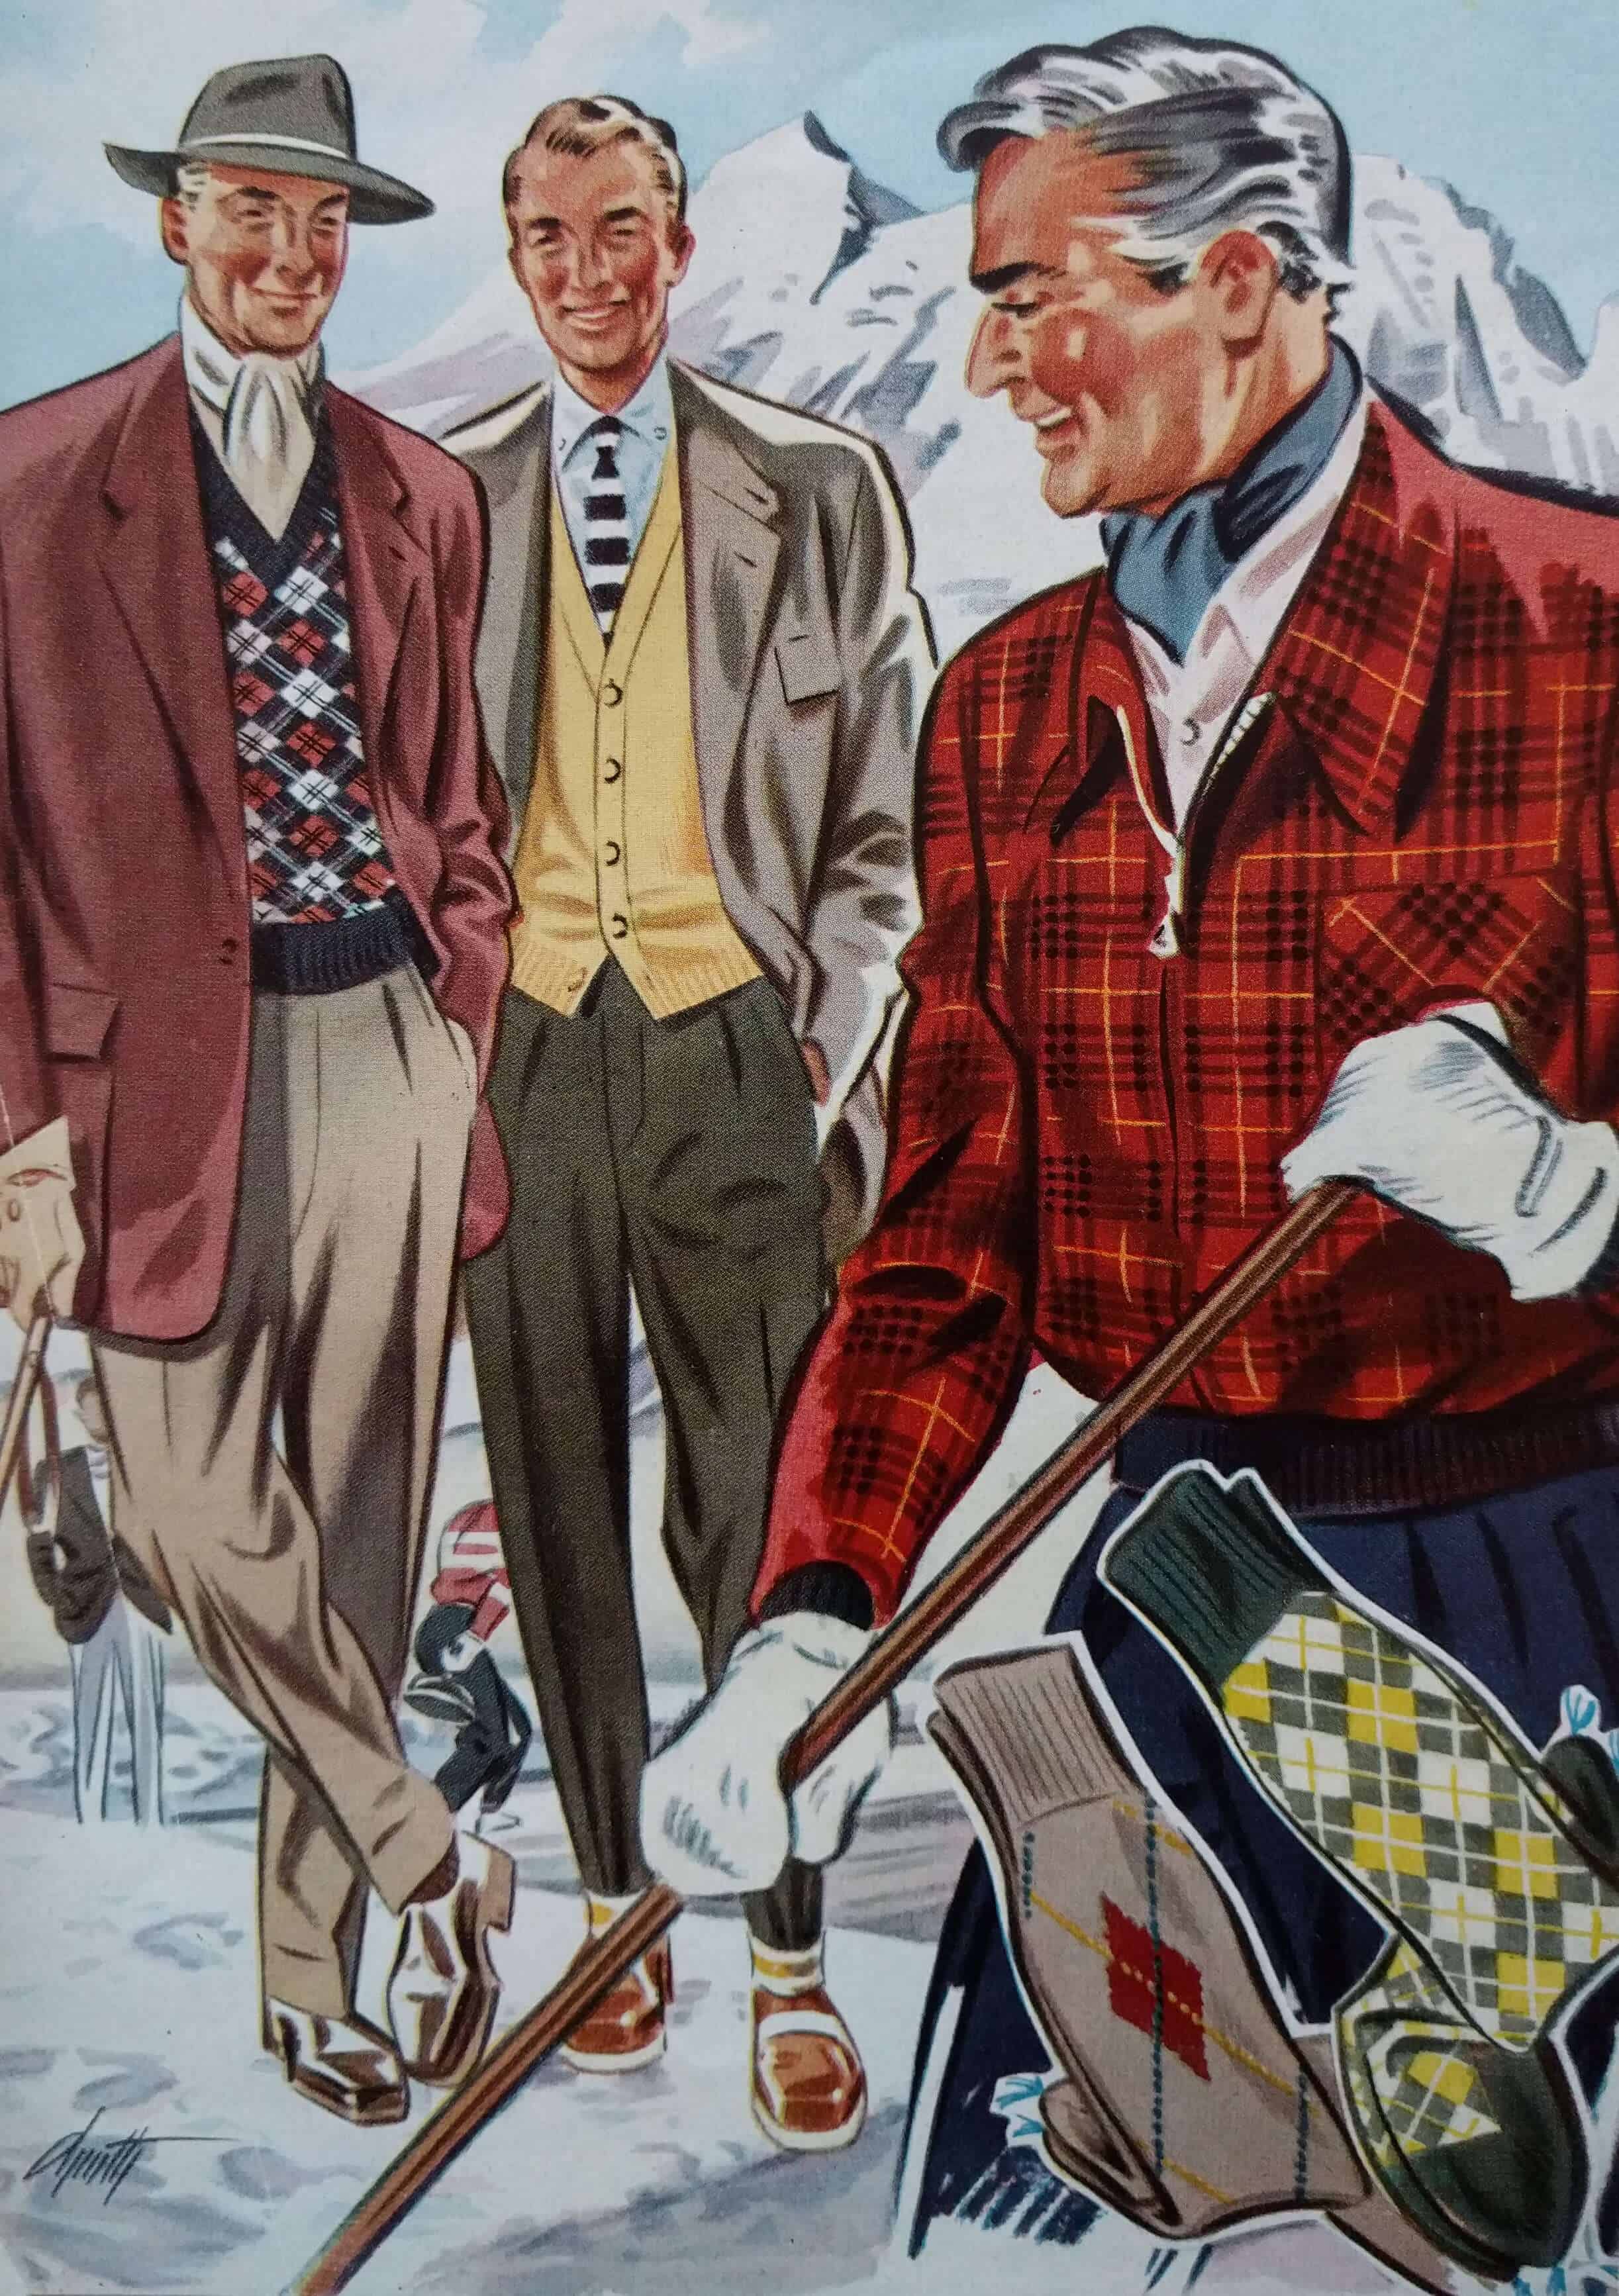 How To Wear Ascots & Cravats The Elegant Way — Gentleman's Gazette